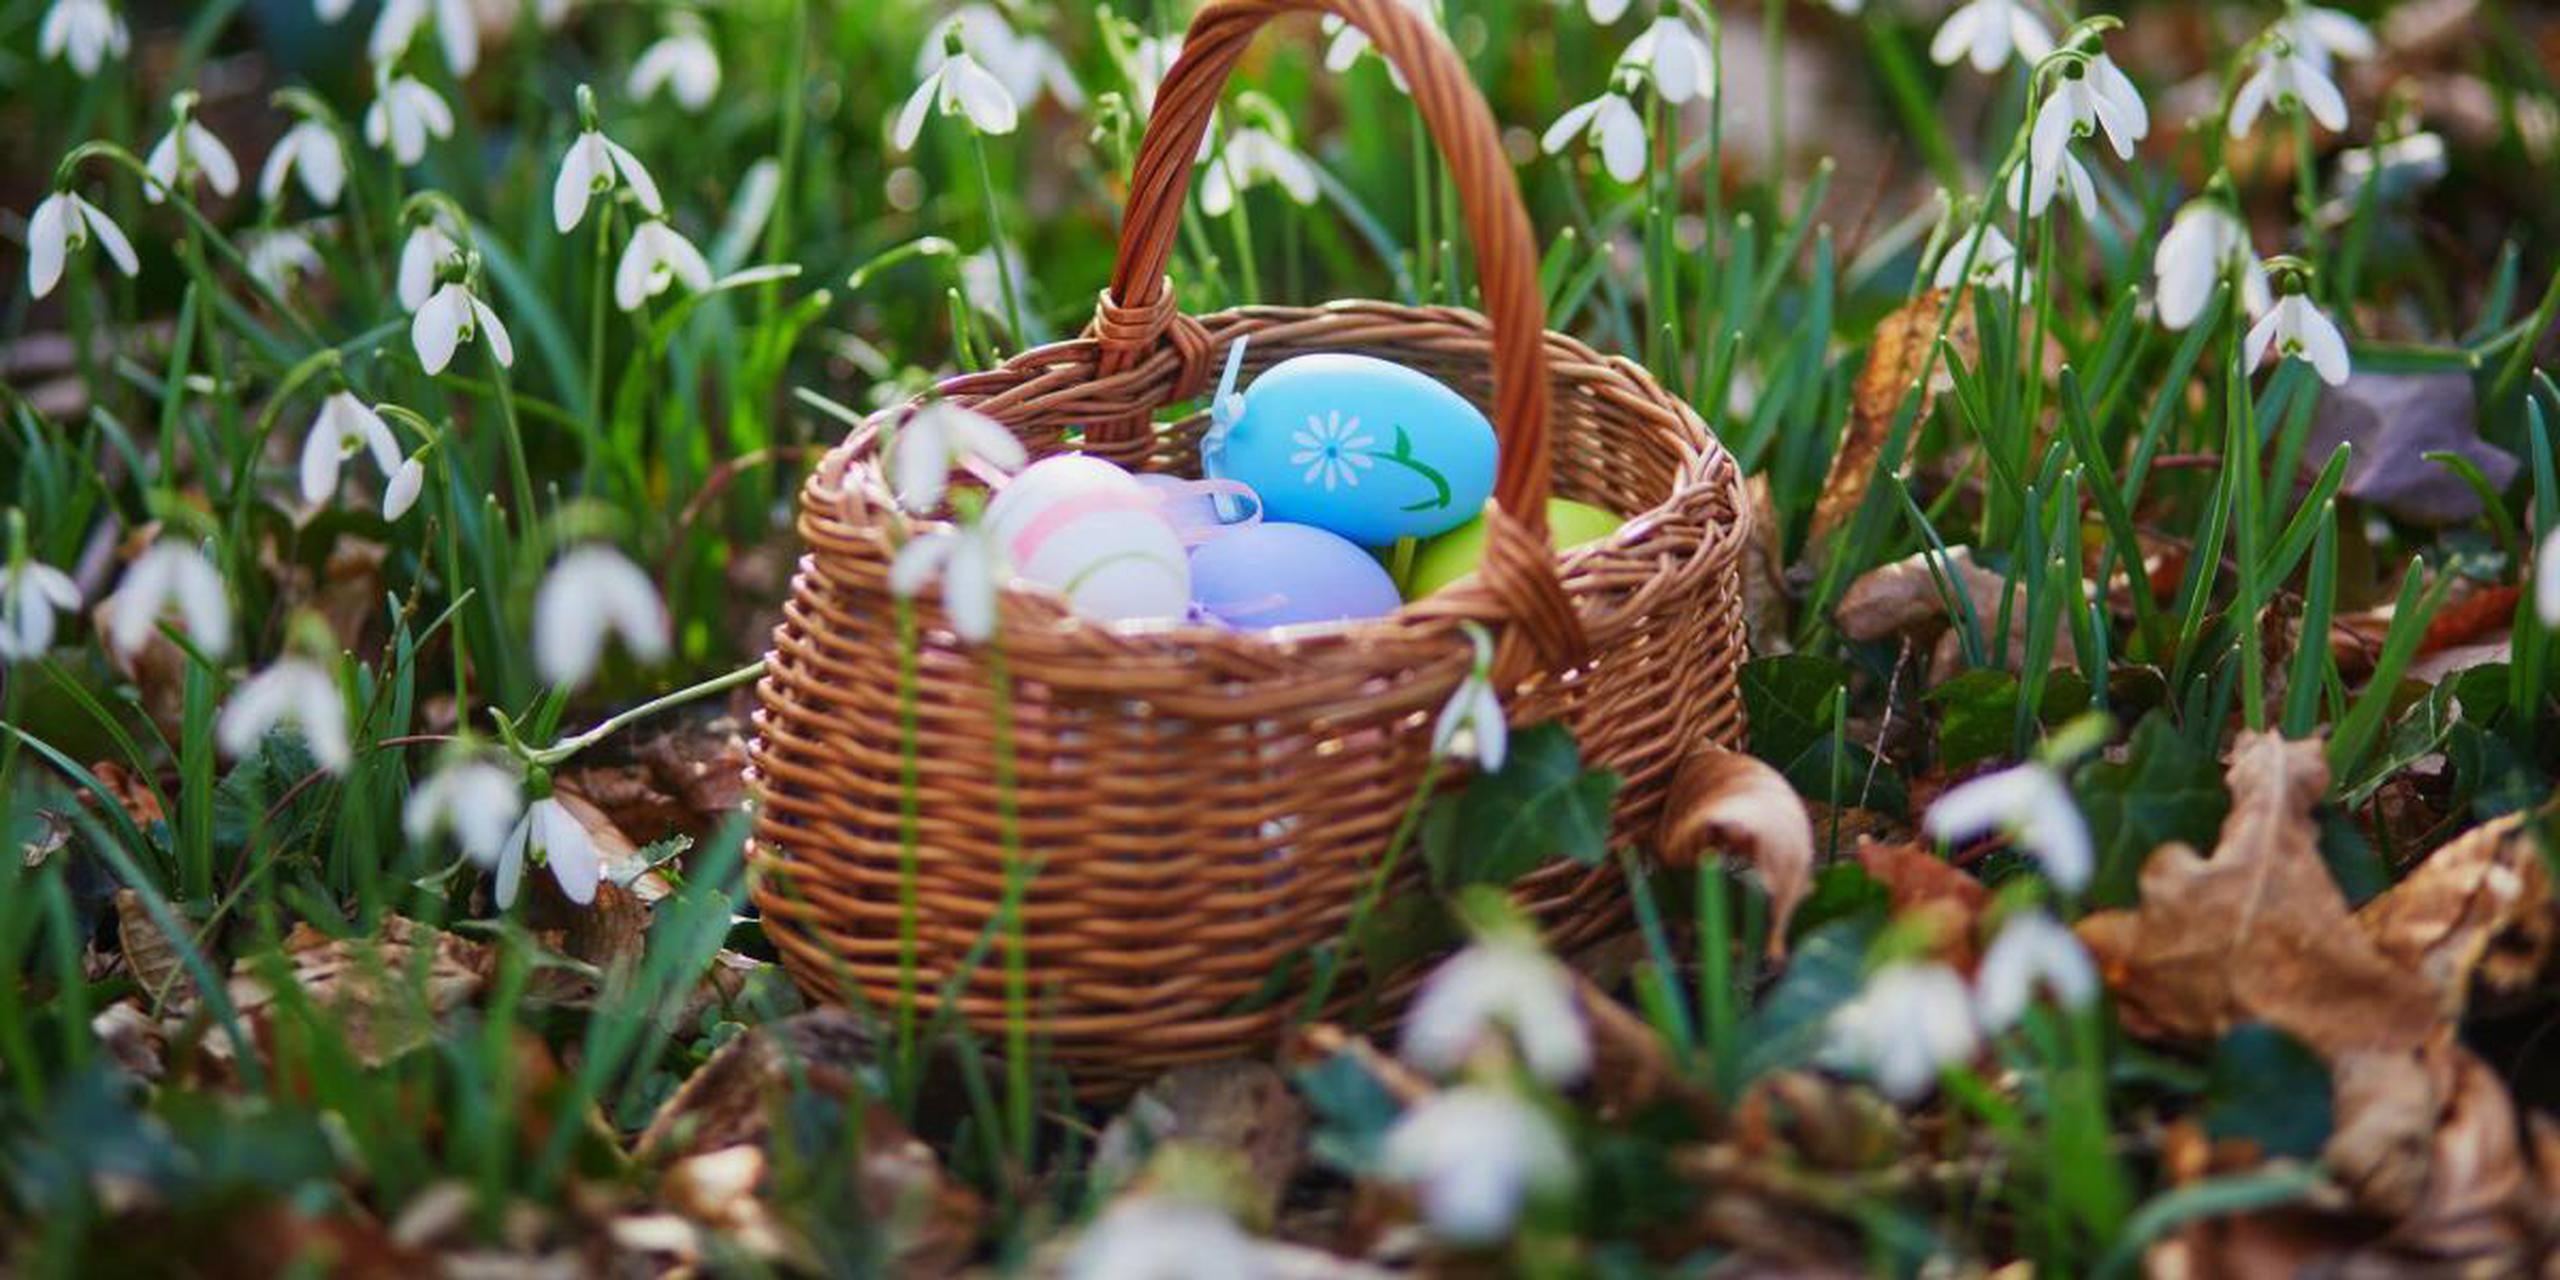 Los huevos y conejos de chocolate son parte de una costumbre que se celebra hace más de 1,000 años.